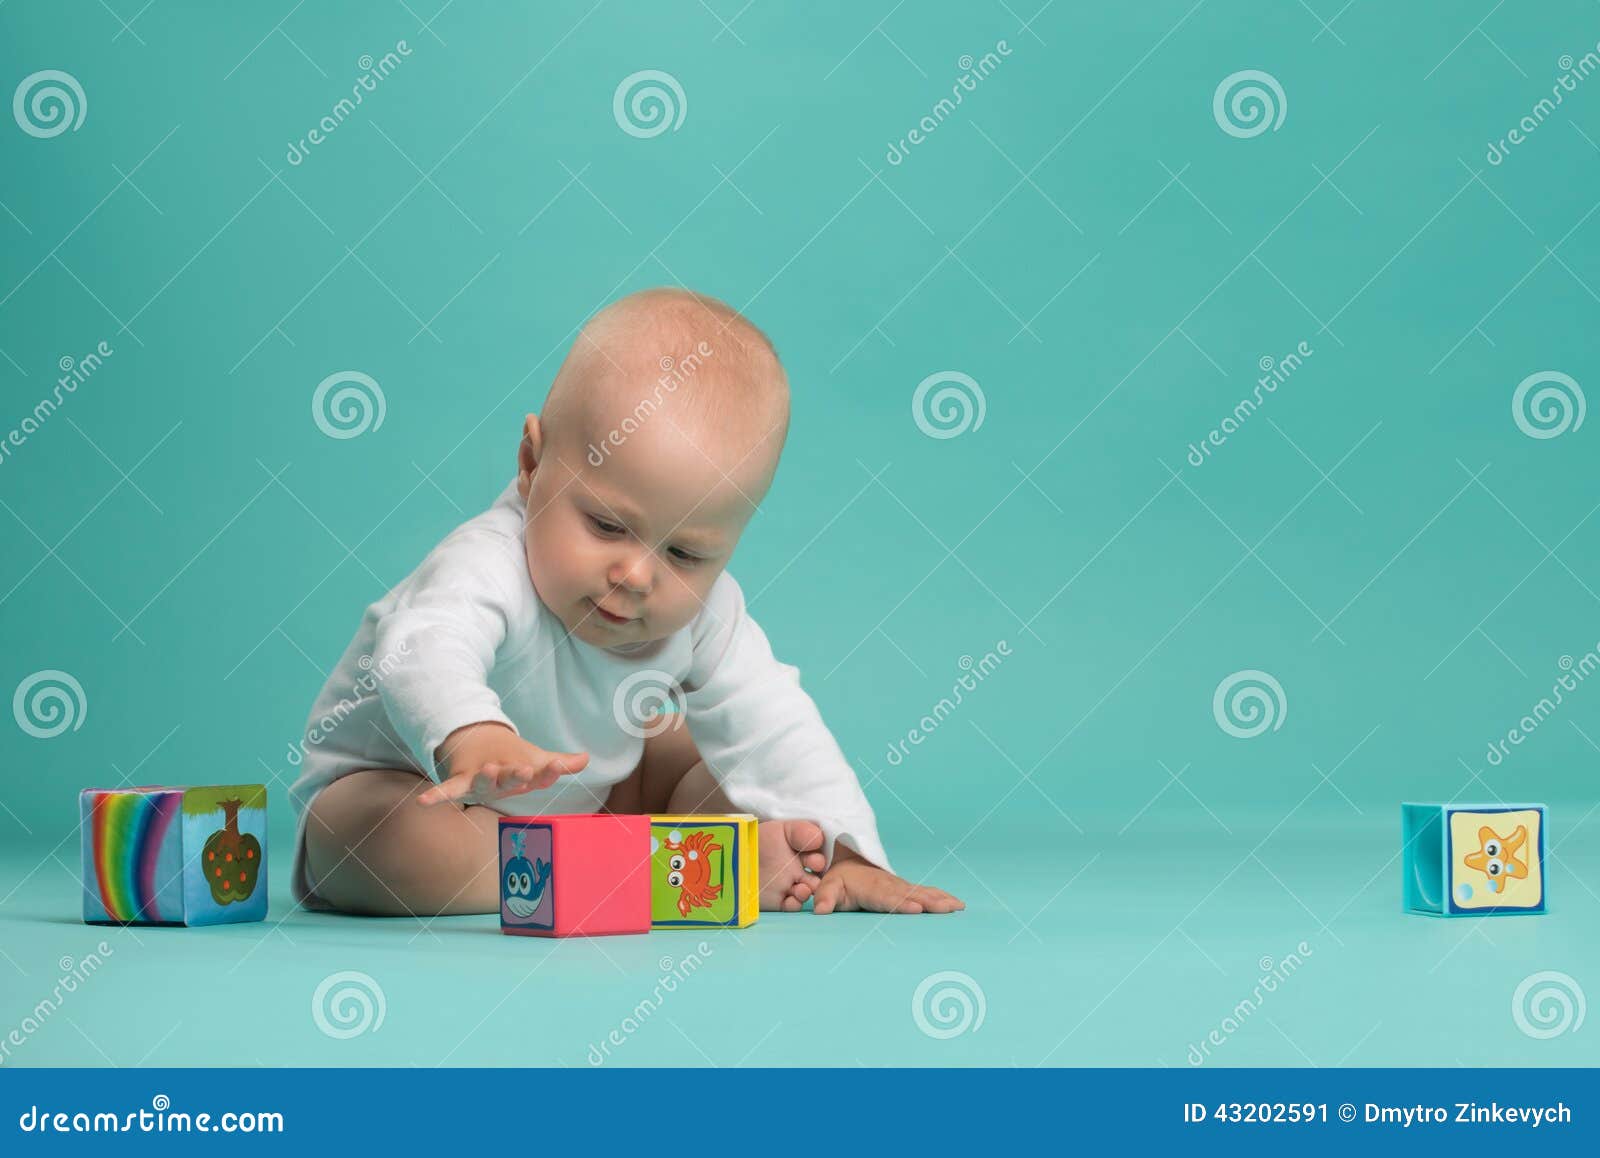 Маленький милый ребёнок играя с блоками цвета. Bodysuit маленького милого ребёнка нося белый играя при покрашенные блоки, изолированные на сини